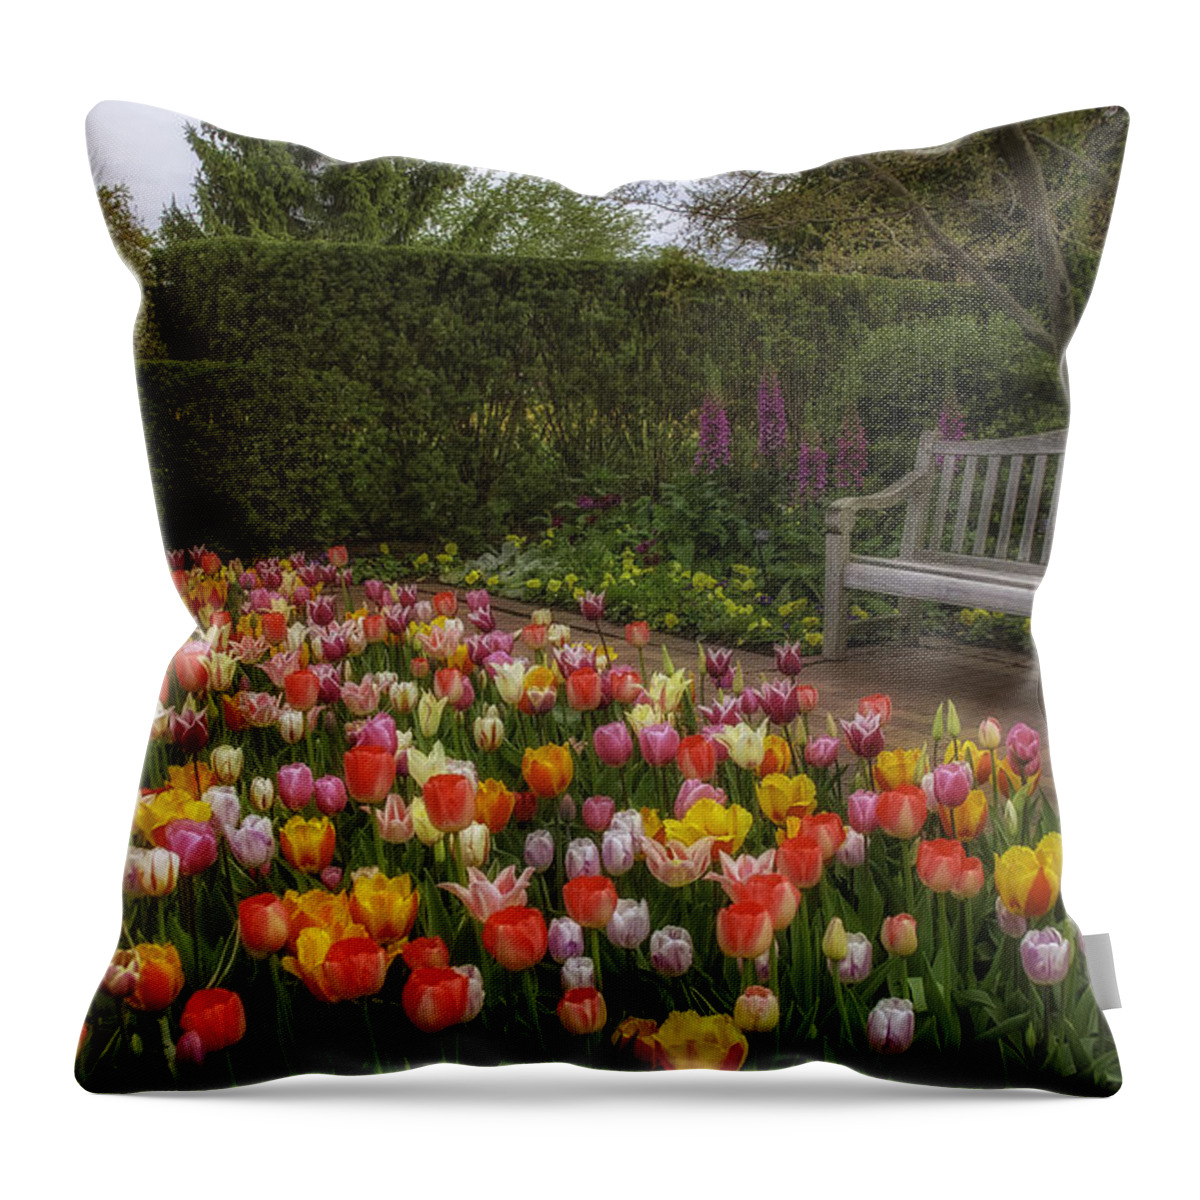 Chicago Botanic Garden Throw Pillow featuring the photograph Tulip Garden by Julie Palencia